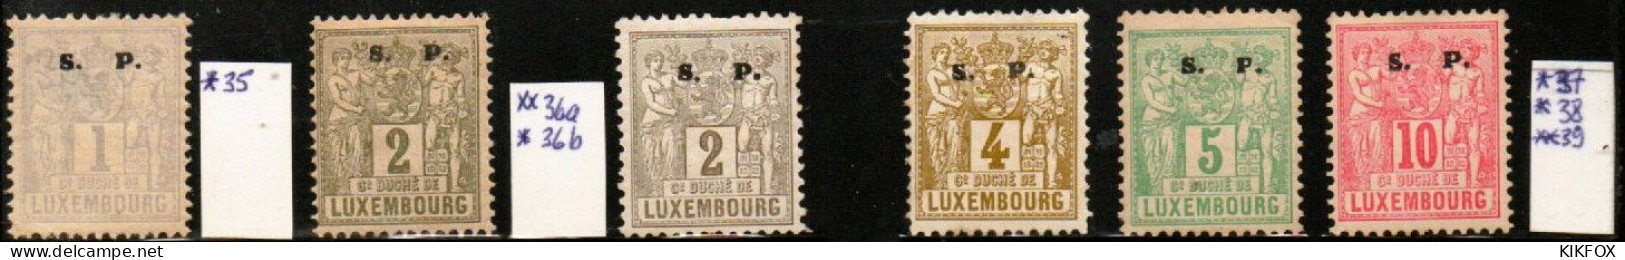 Luxembourg , Luxemburg ,1882, MI 35 - 39   FREIMARKEN ALLEGORIE, S.P LARGE, UNGEBRAUCHT, CHARNIERE - Dienstmarken